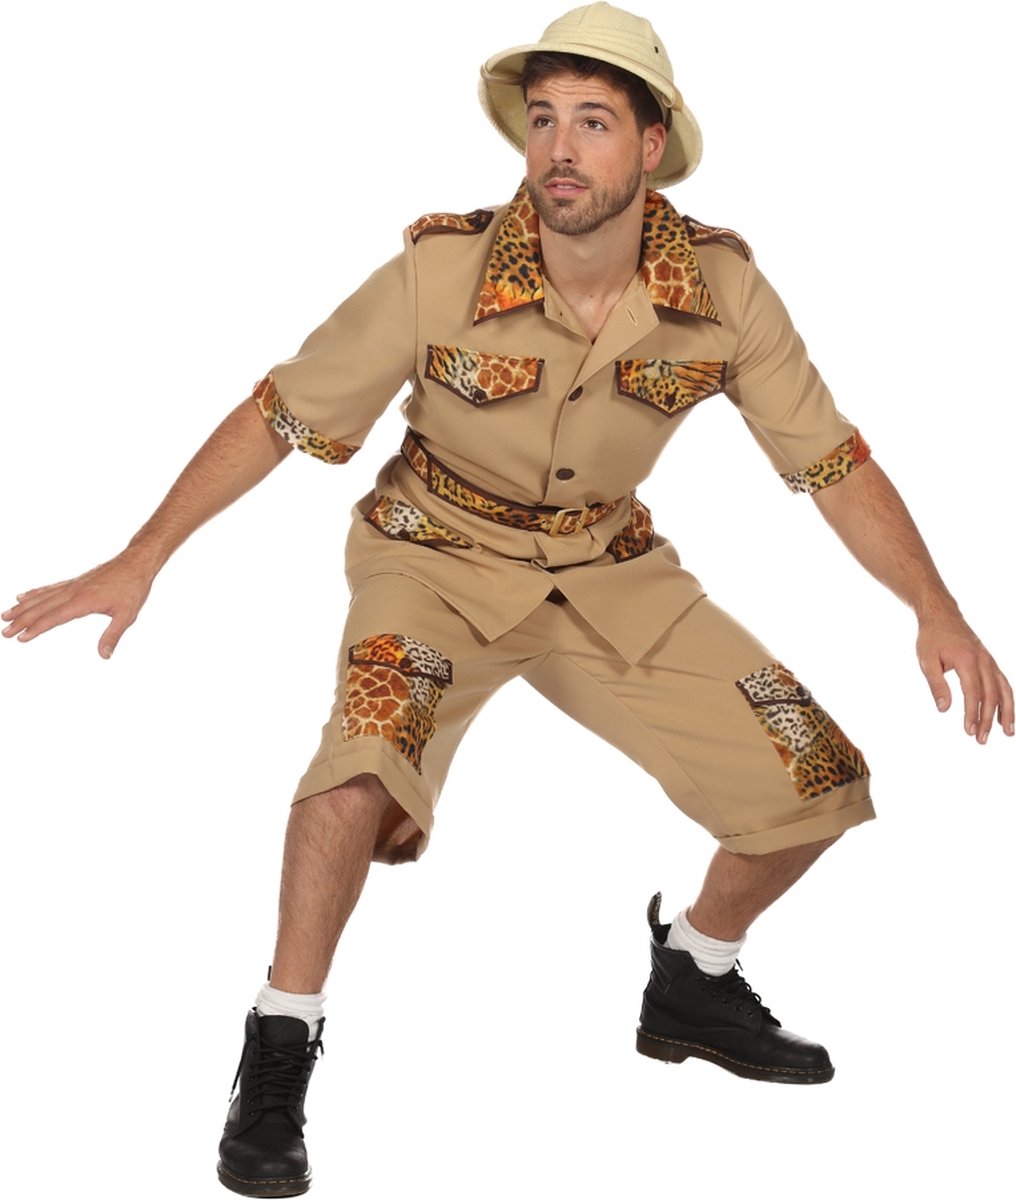 Wilbers & Wilbers - Jungle & Afrika Kostuum - De Jungle Slaapt Nooit Safari - Man - Wit / Beige - Maat 52 - Carnavalskleding - Verkleedkleding